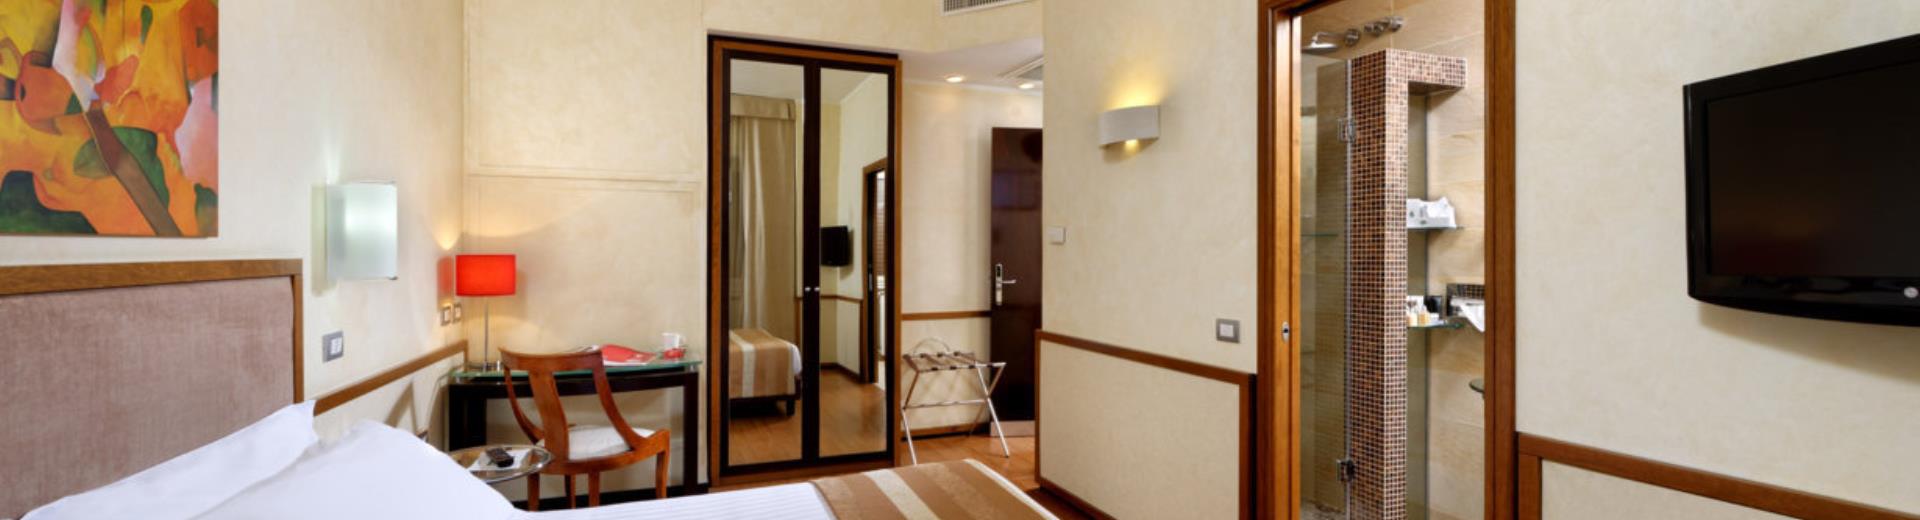 Descubra la comodidad y el diseño de las habitaciones confort nuevo!